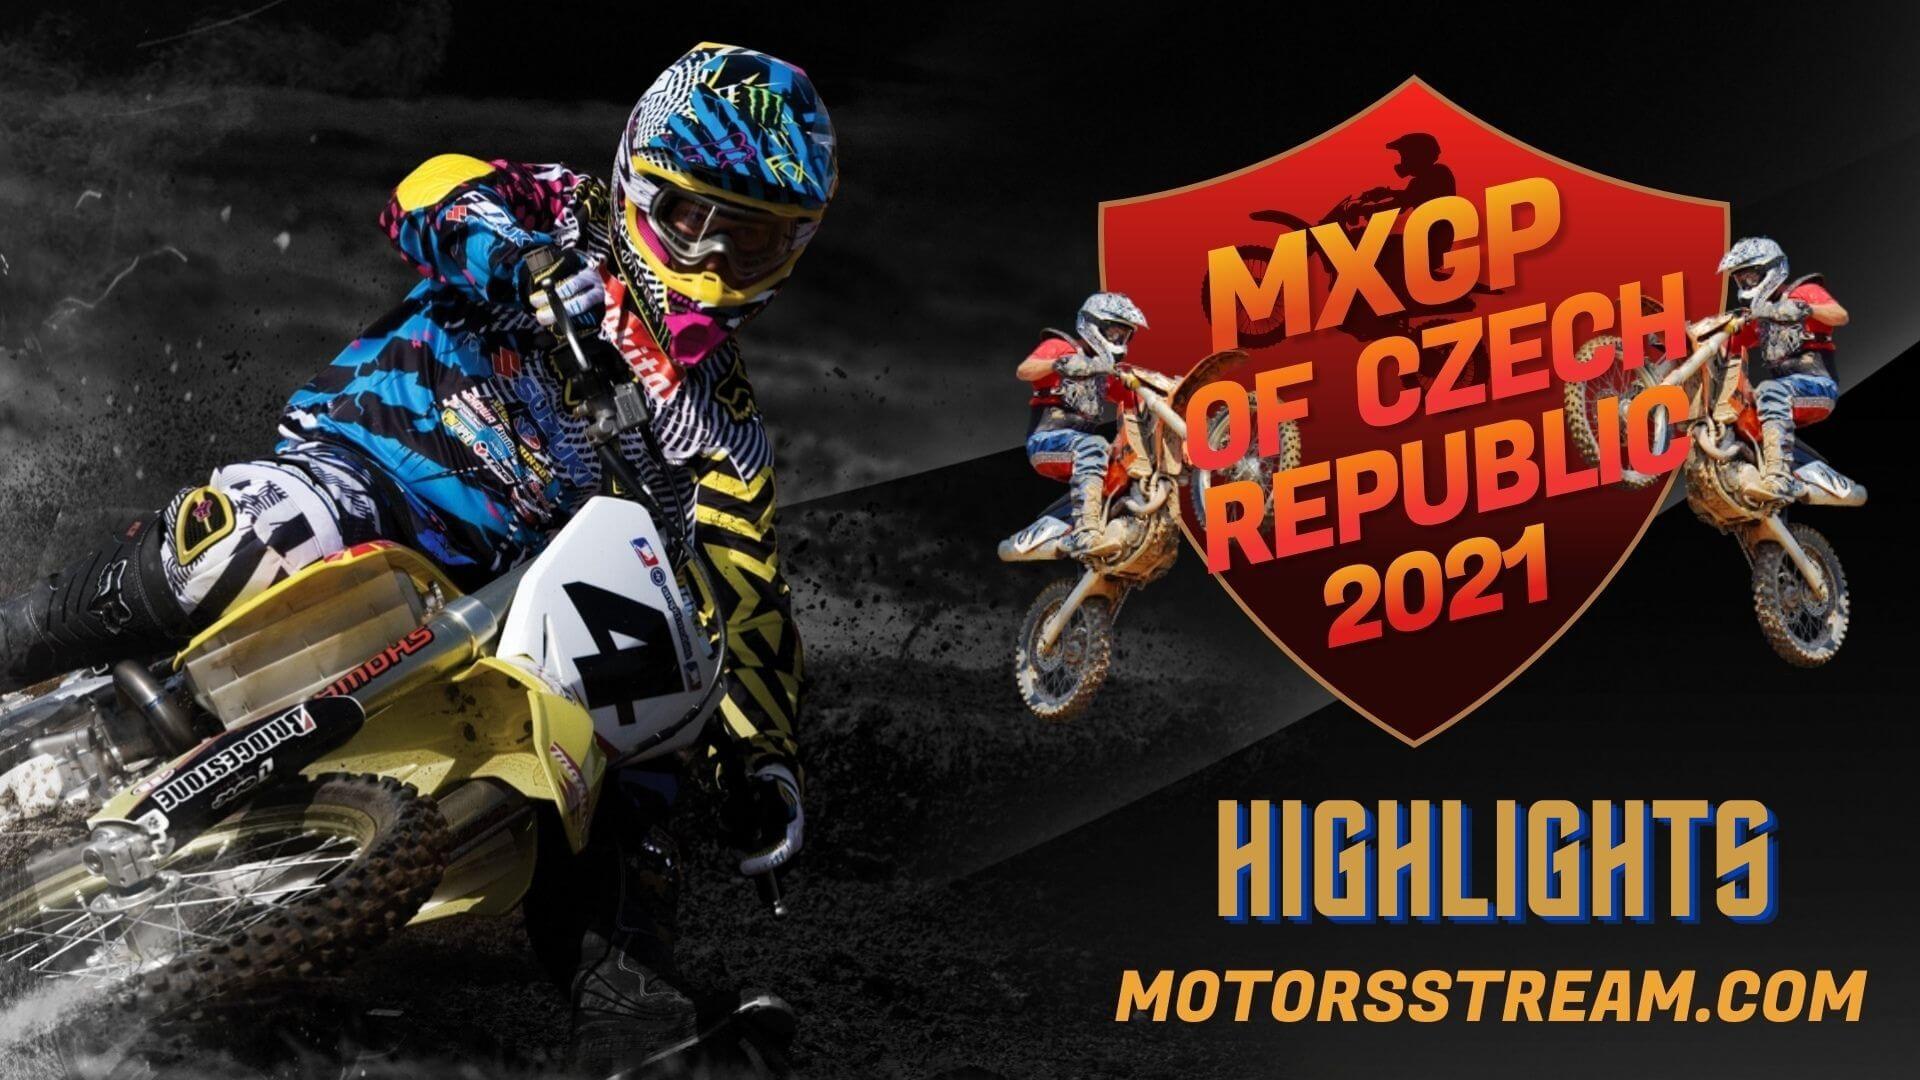 FIM Motocross WC Czech Republic Highlight 2021 MXGP